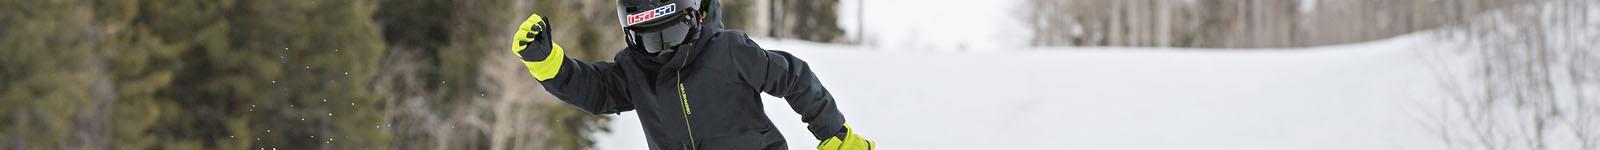 Roxy Kids Ski/Snowboard & Winter Gloves/Mittens 